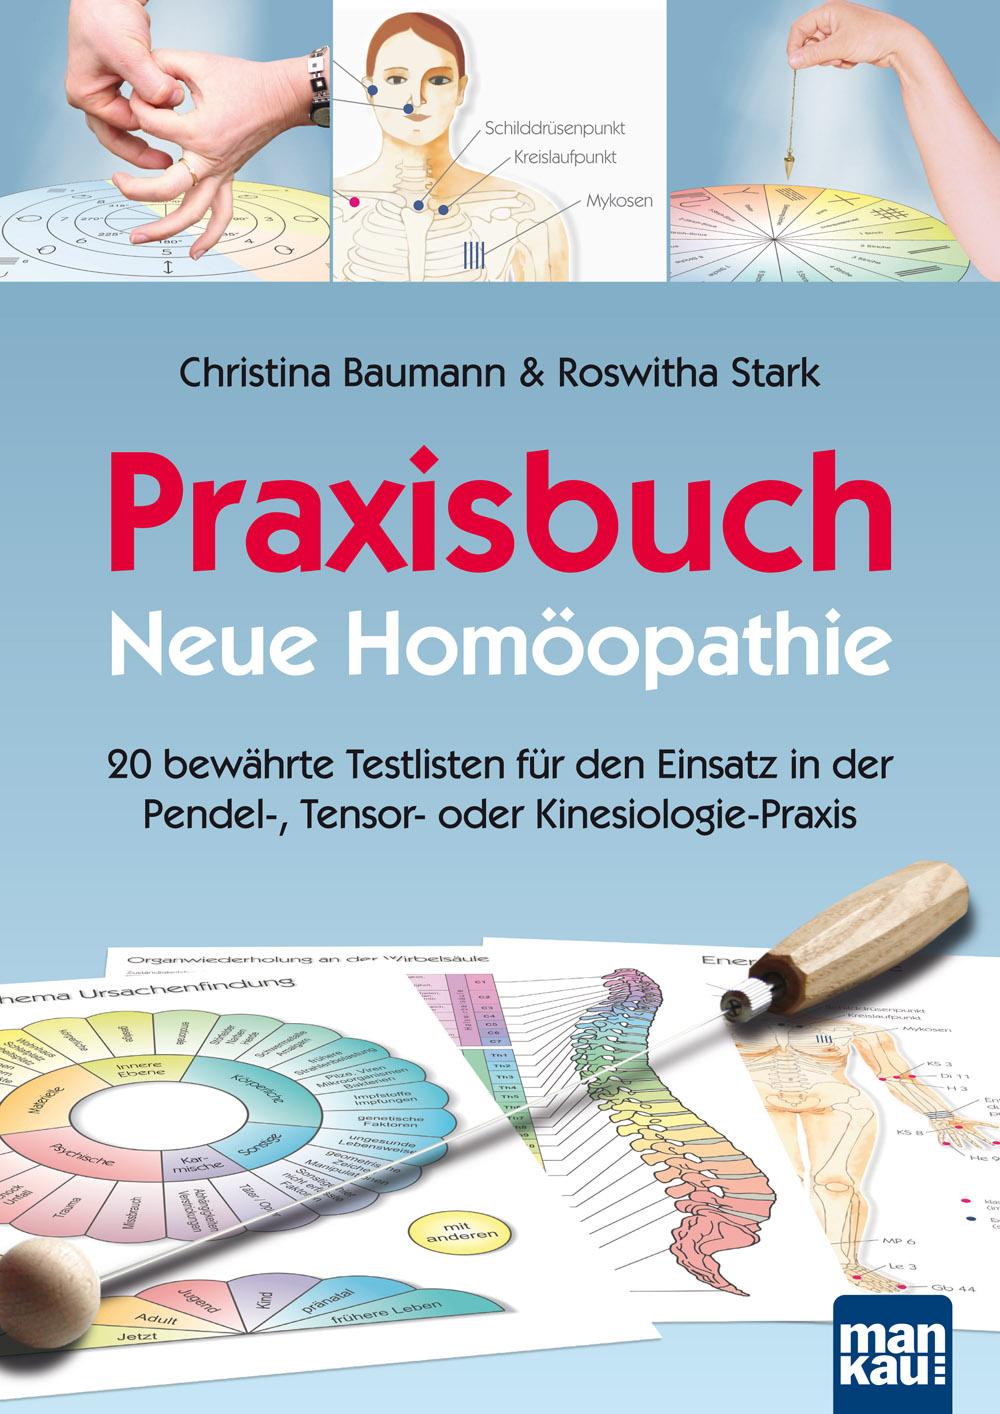 Praxisbuch Neue Homöopathie 20 bewährte Testlisten für den Einsatz in der Pendel-, Tensor- oder Kinesiologie-Praxis